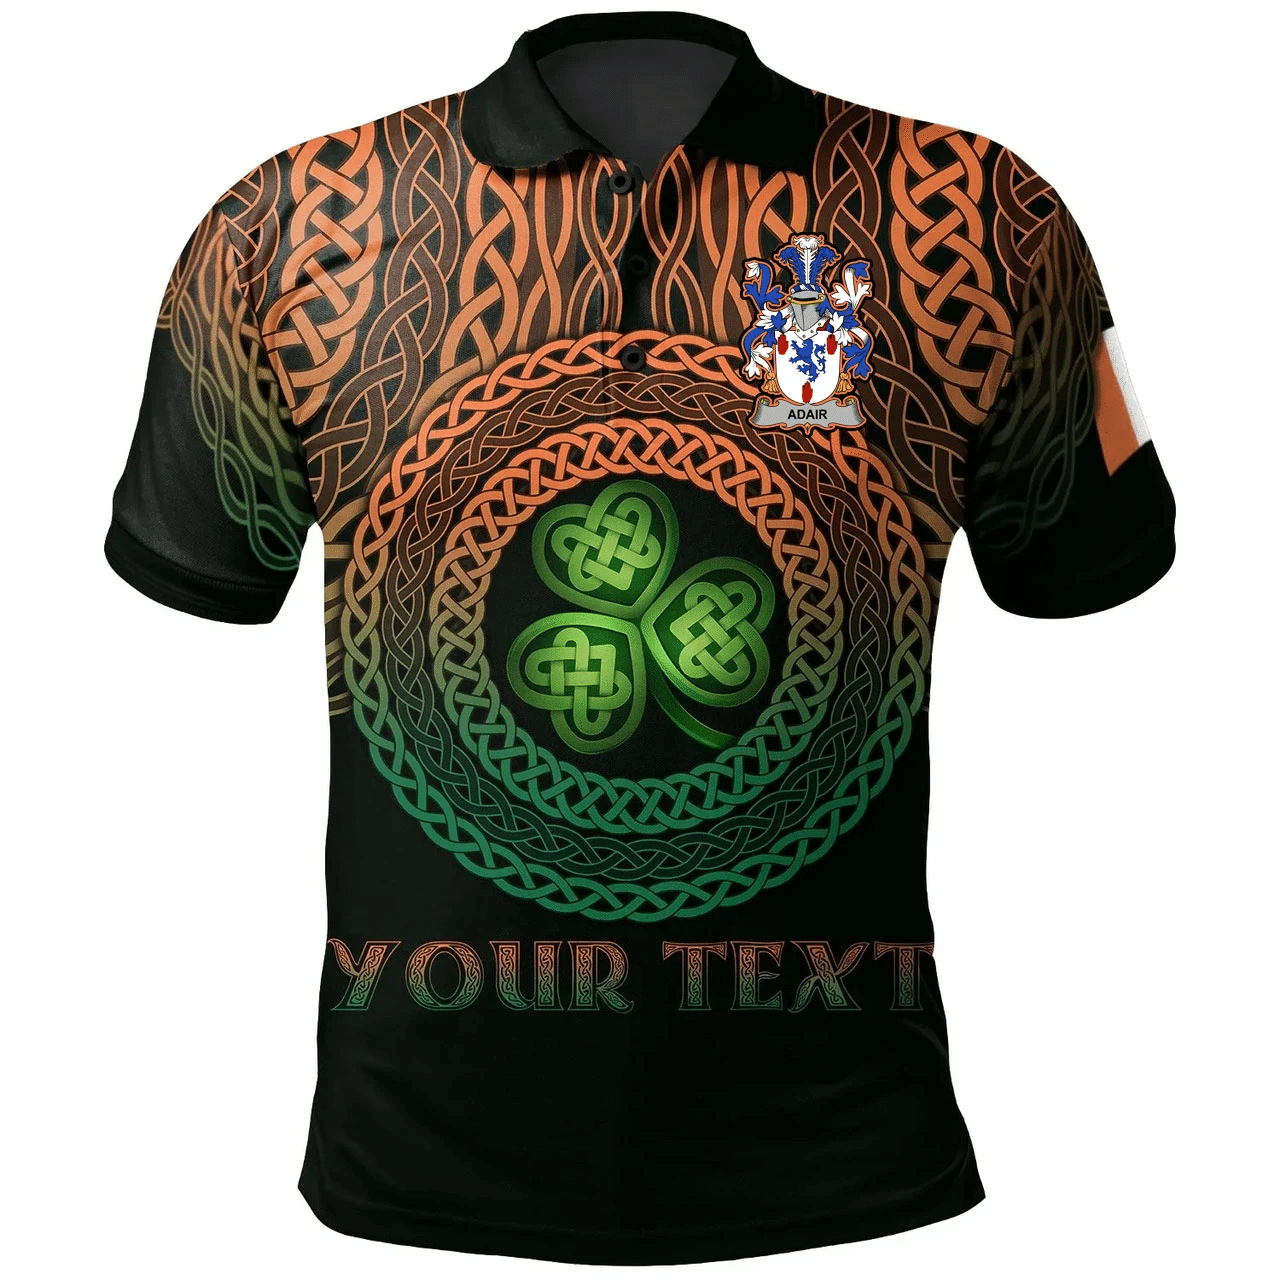 1stIreland Ireland Polo Shirt - Adair Irish Family Crest Polo Shirt - Celtic Pride A7 | 1stIreland.com